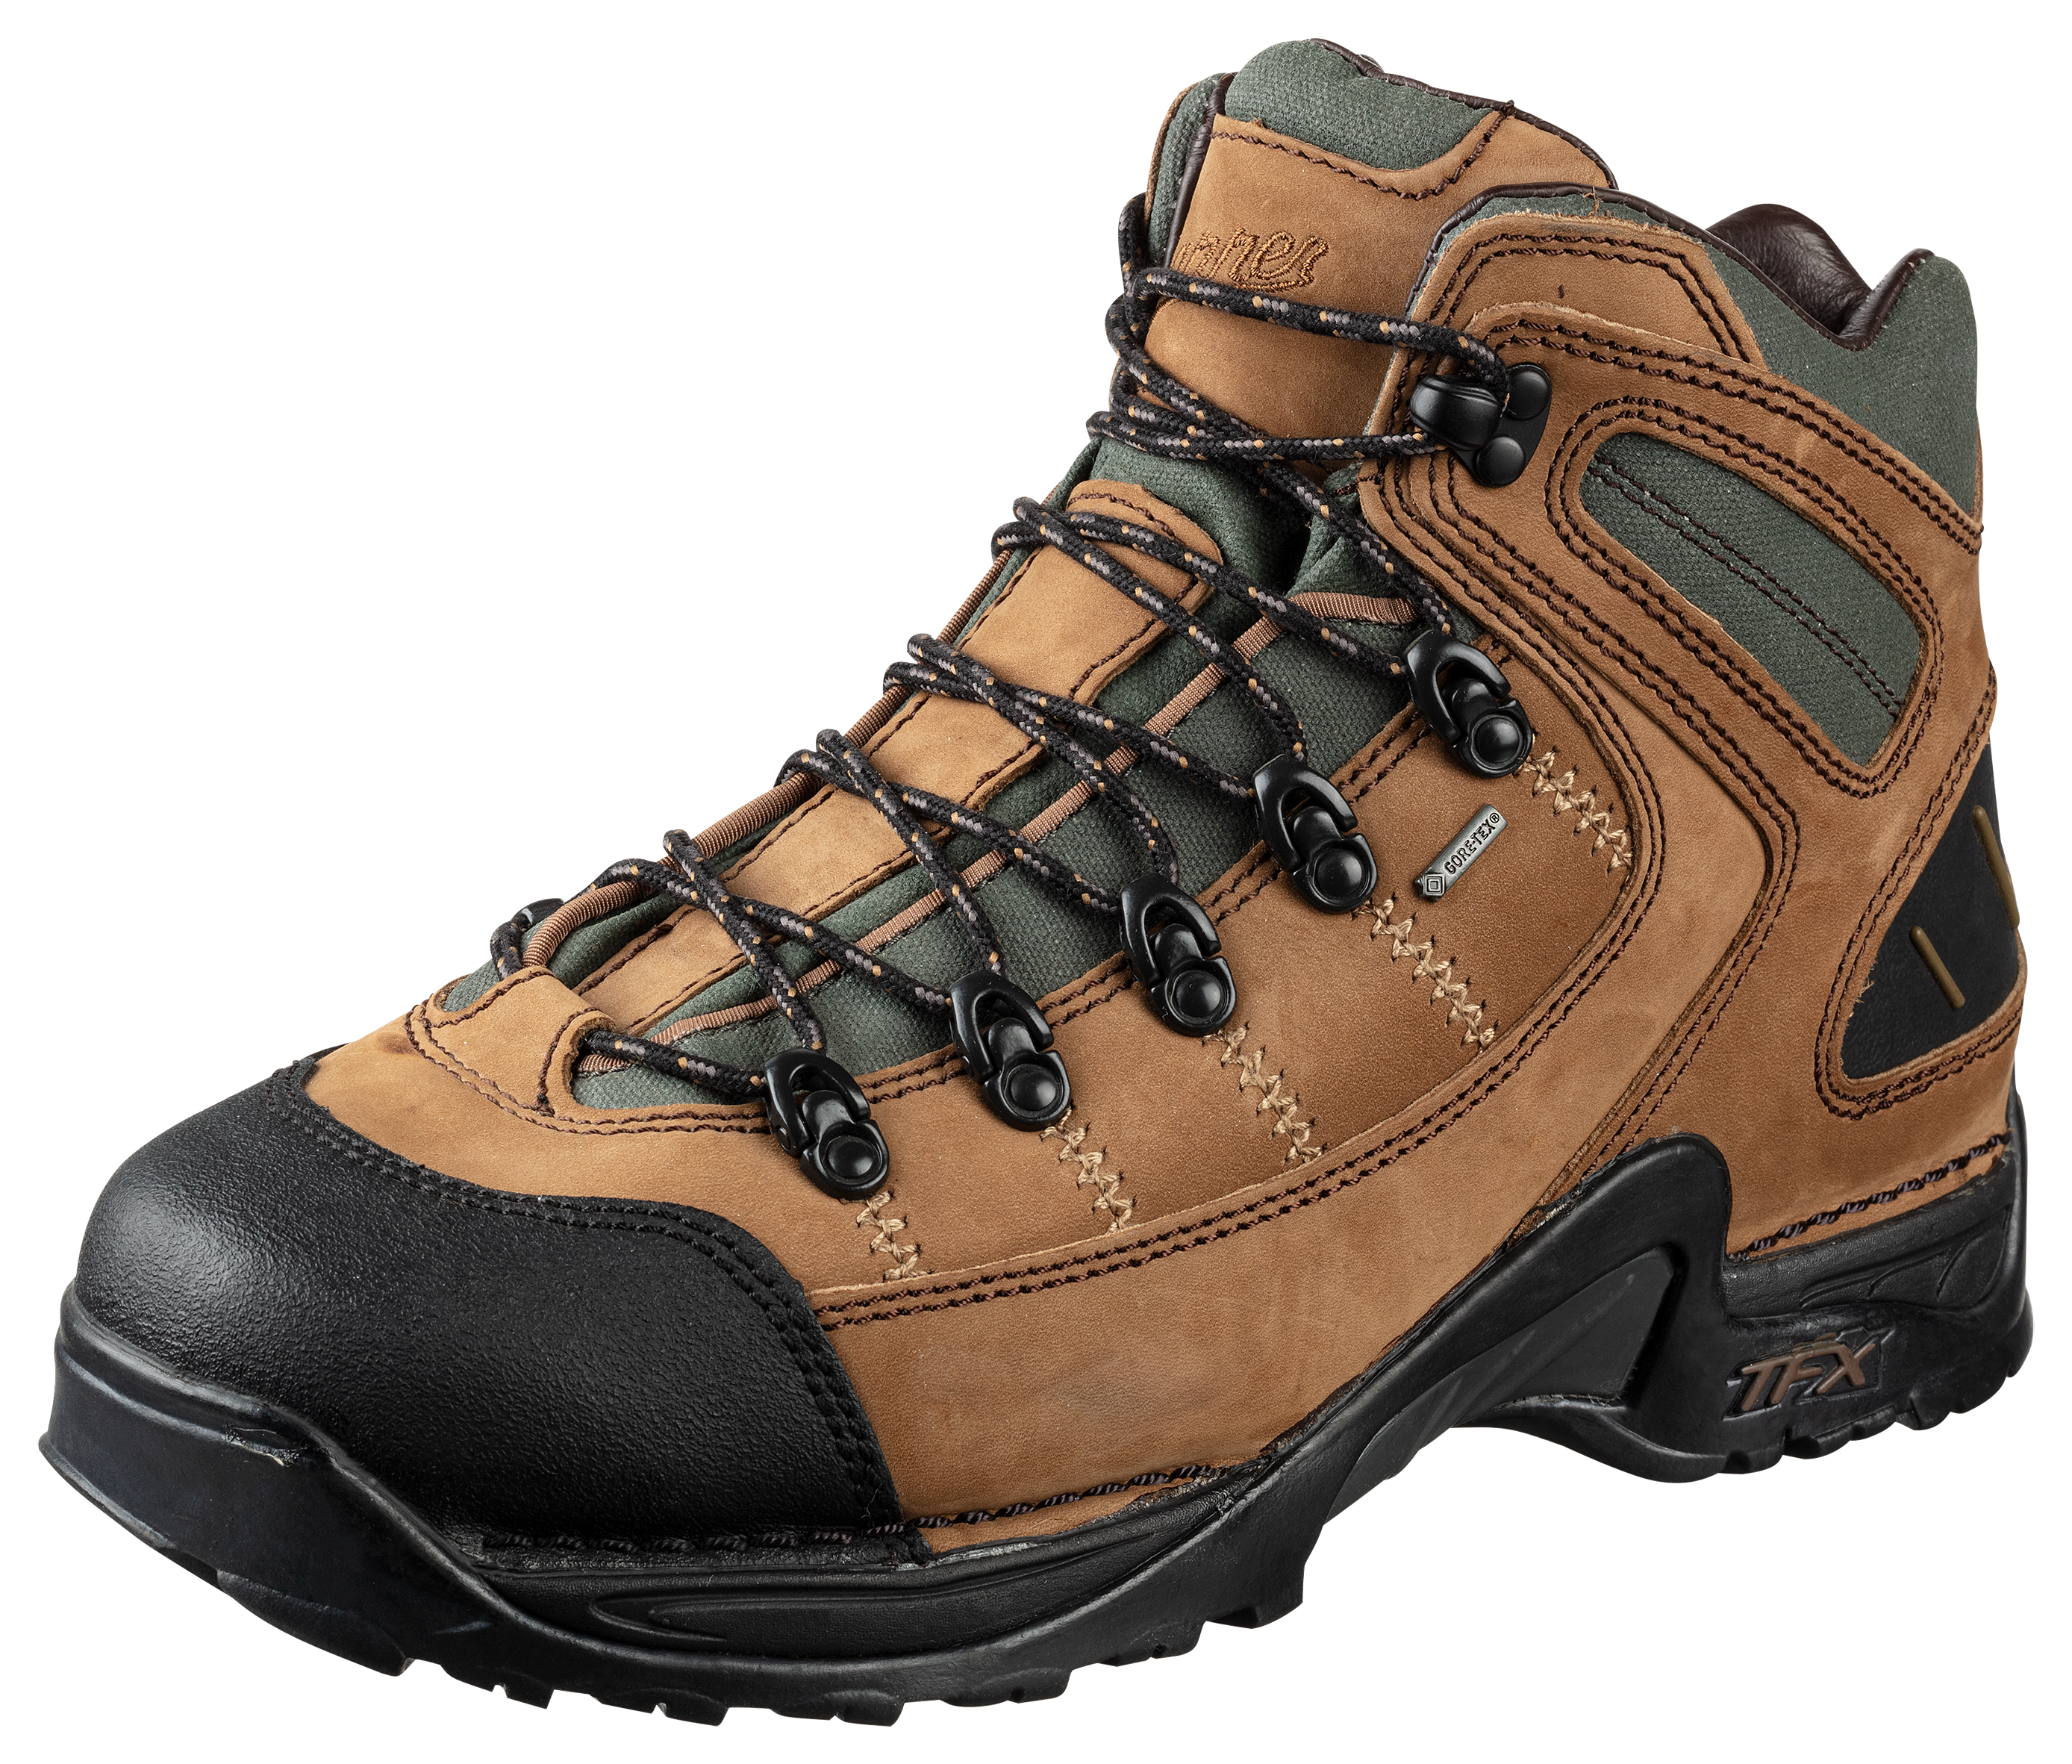 Danner 453 GORE-TEX Waterproof Hiking Boots for Men - Dark Tan - 8.5M